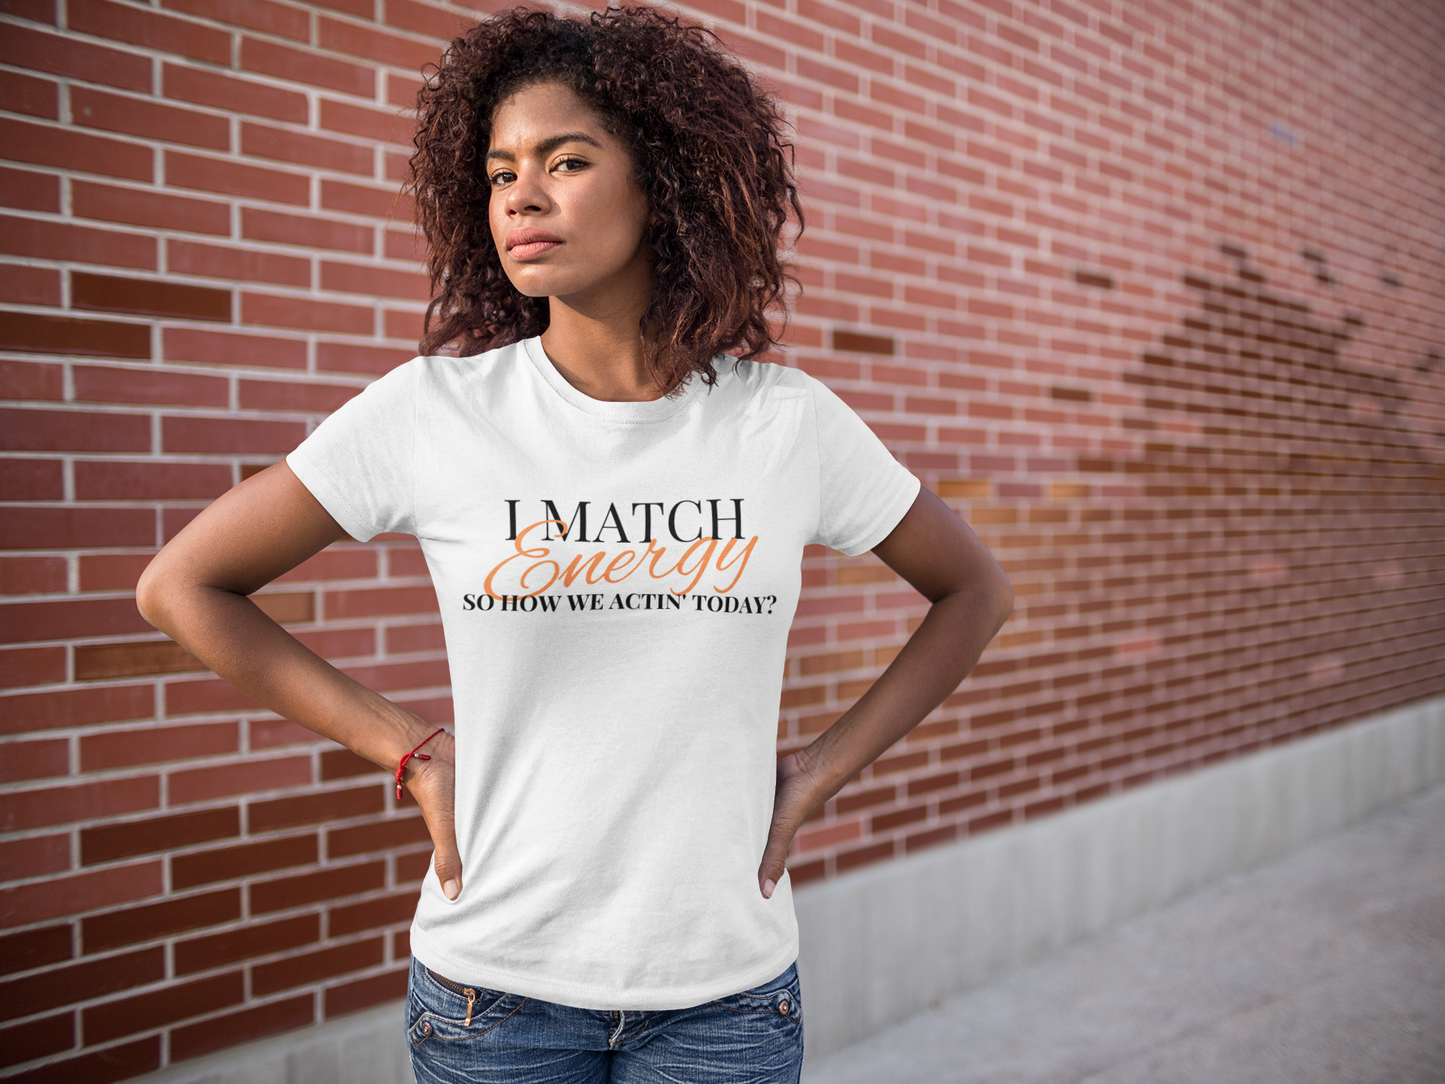 I Match Energy Women's Relaxed T-Shirt